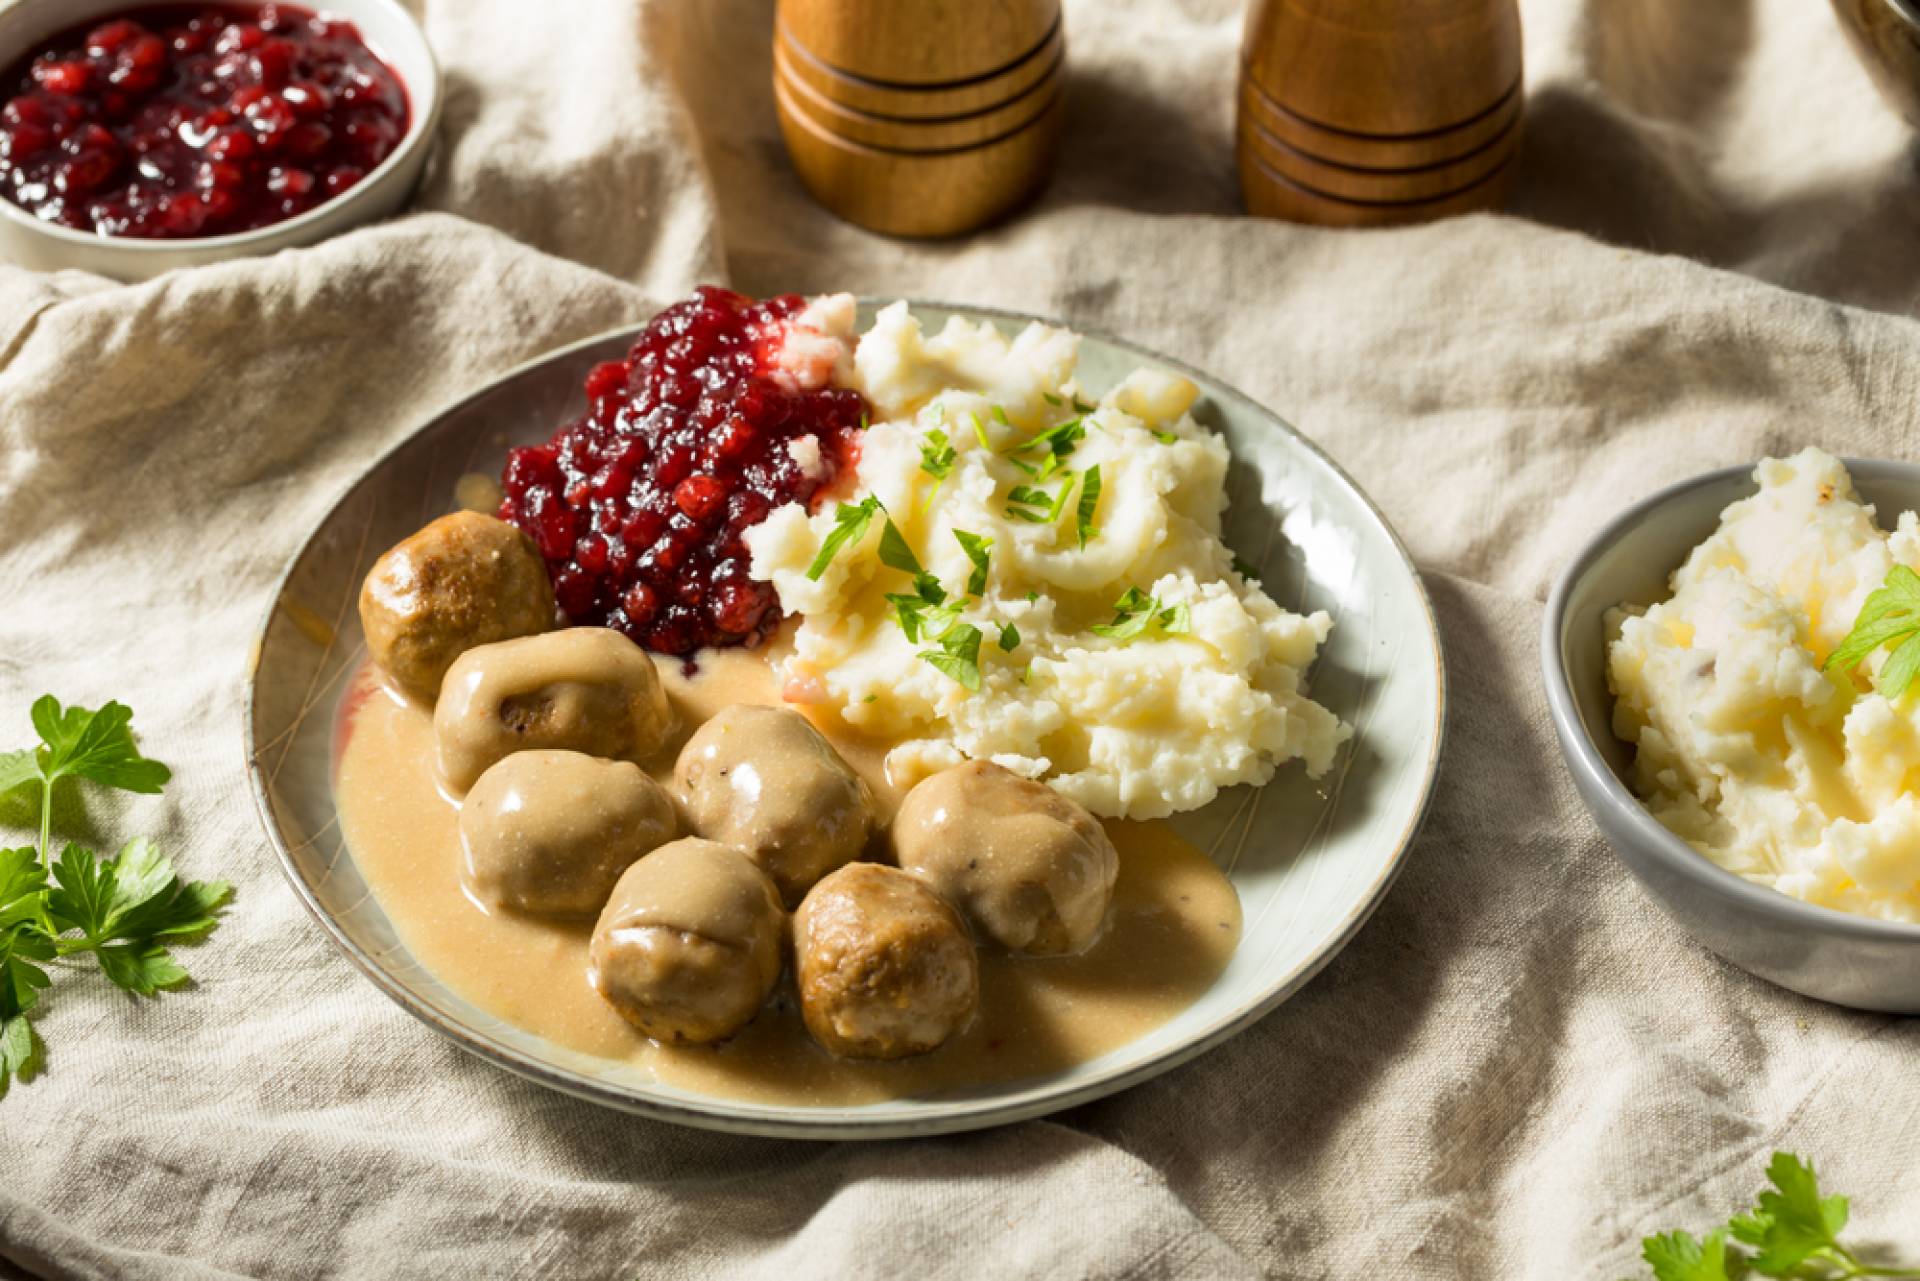 Swedish Meatballs over Mashed Potatoes